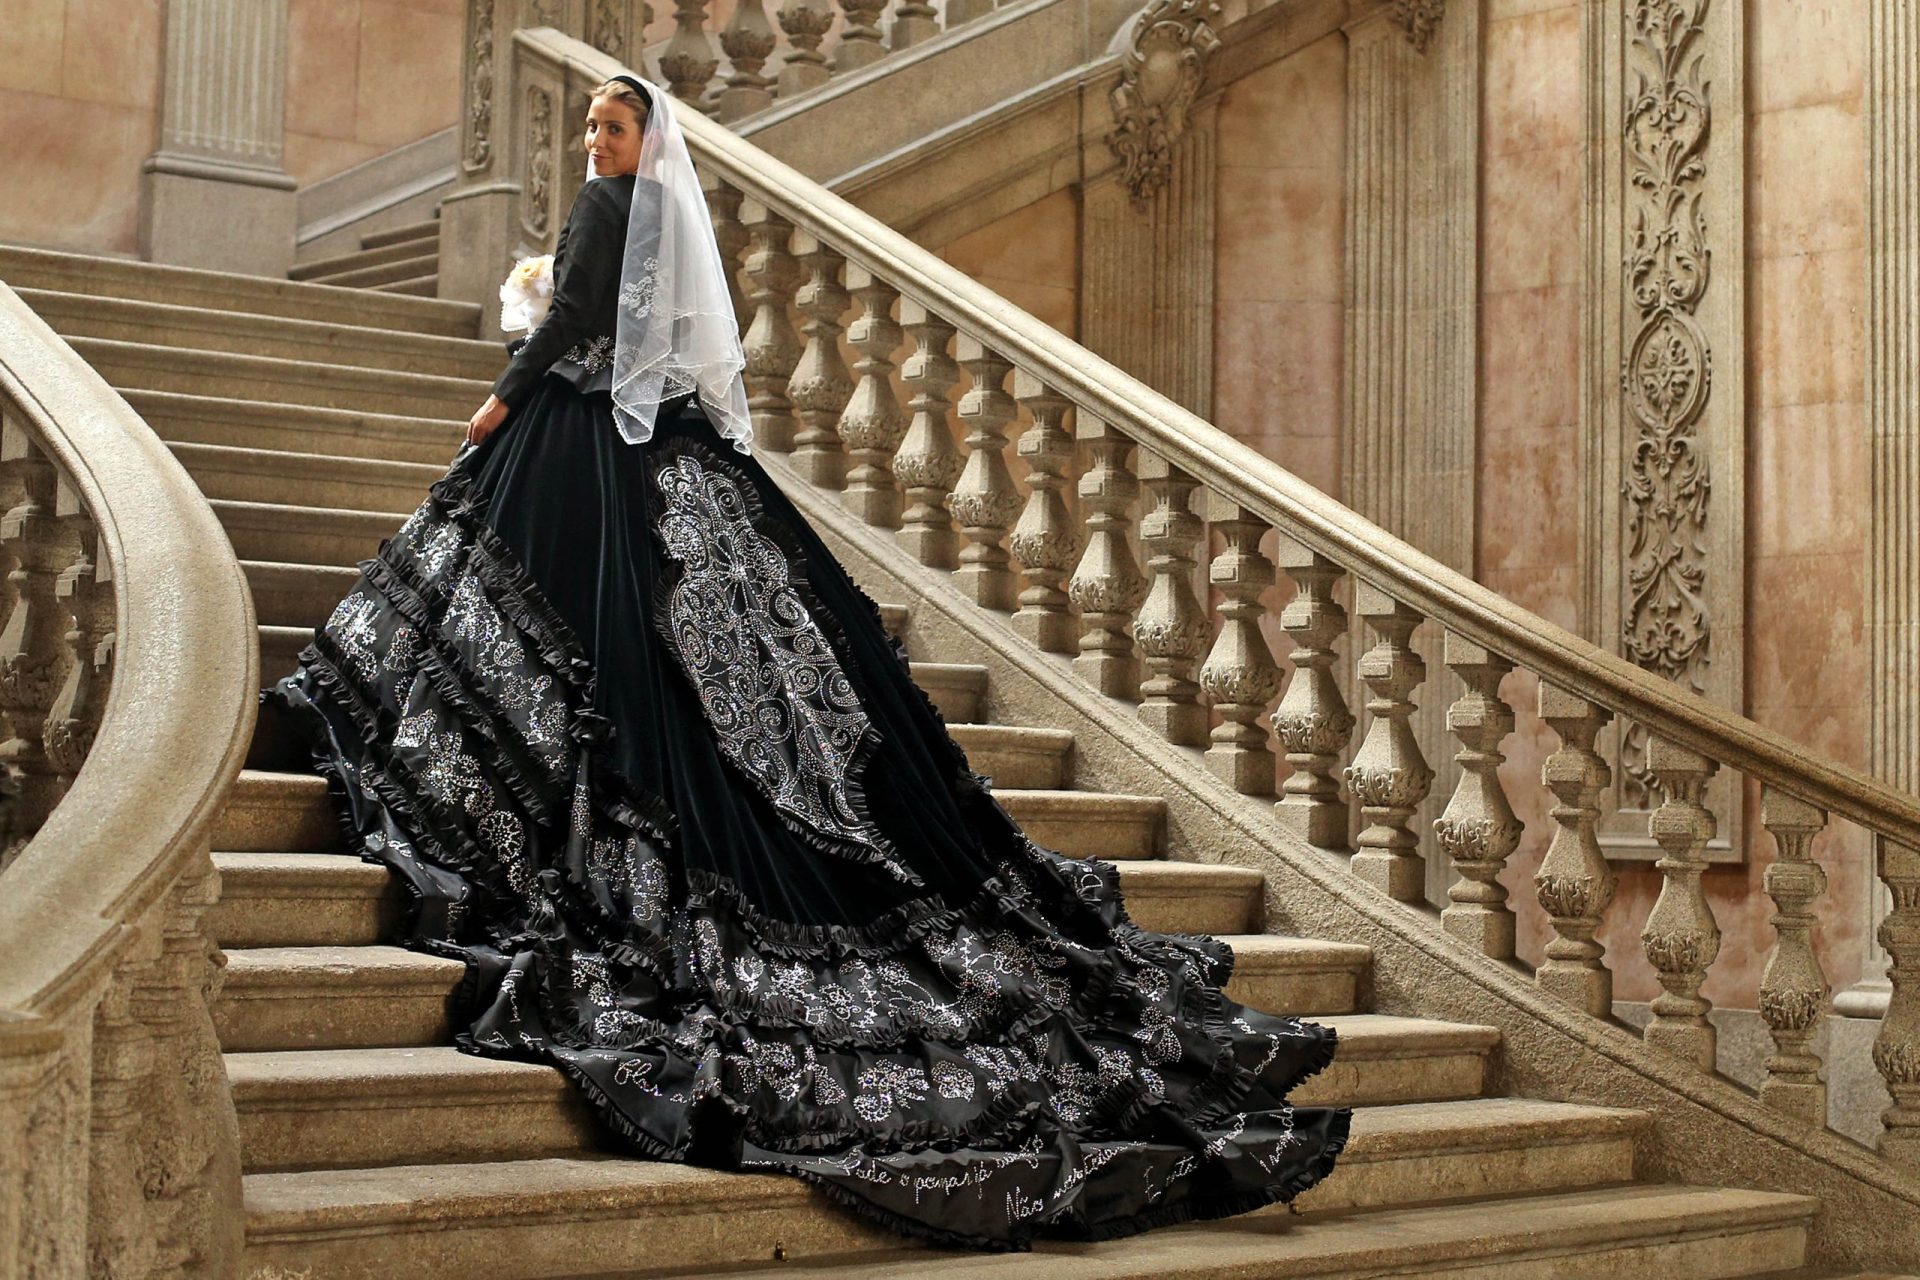 Costureiro cria vestido de noiva com 70 mil cristais inspirado em traje de Viana